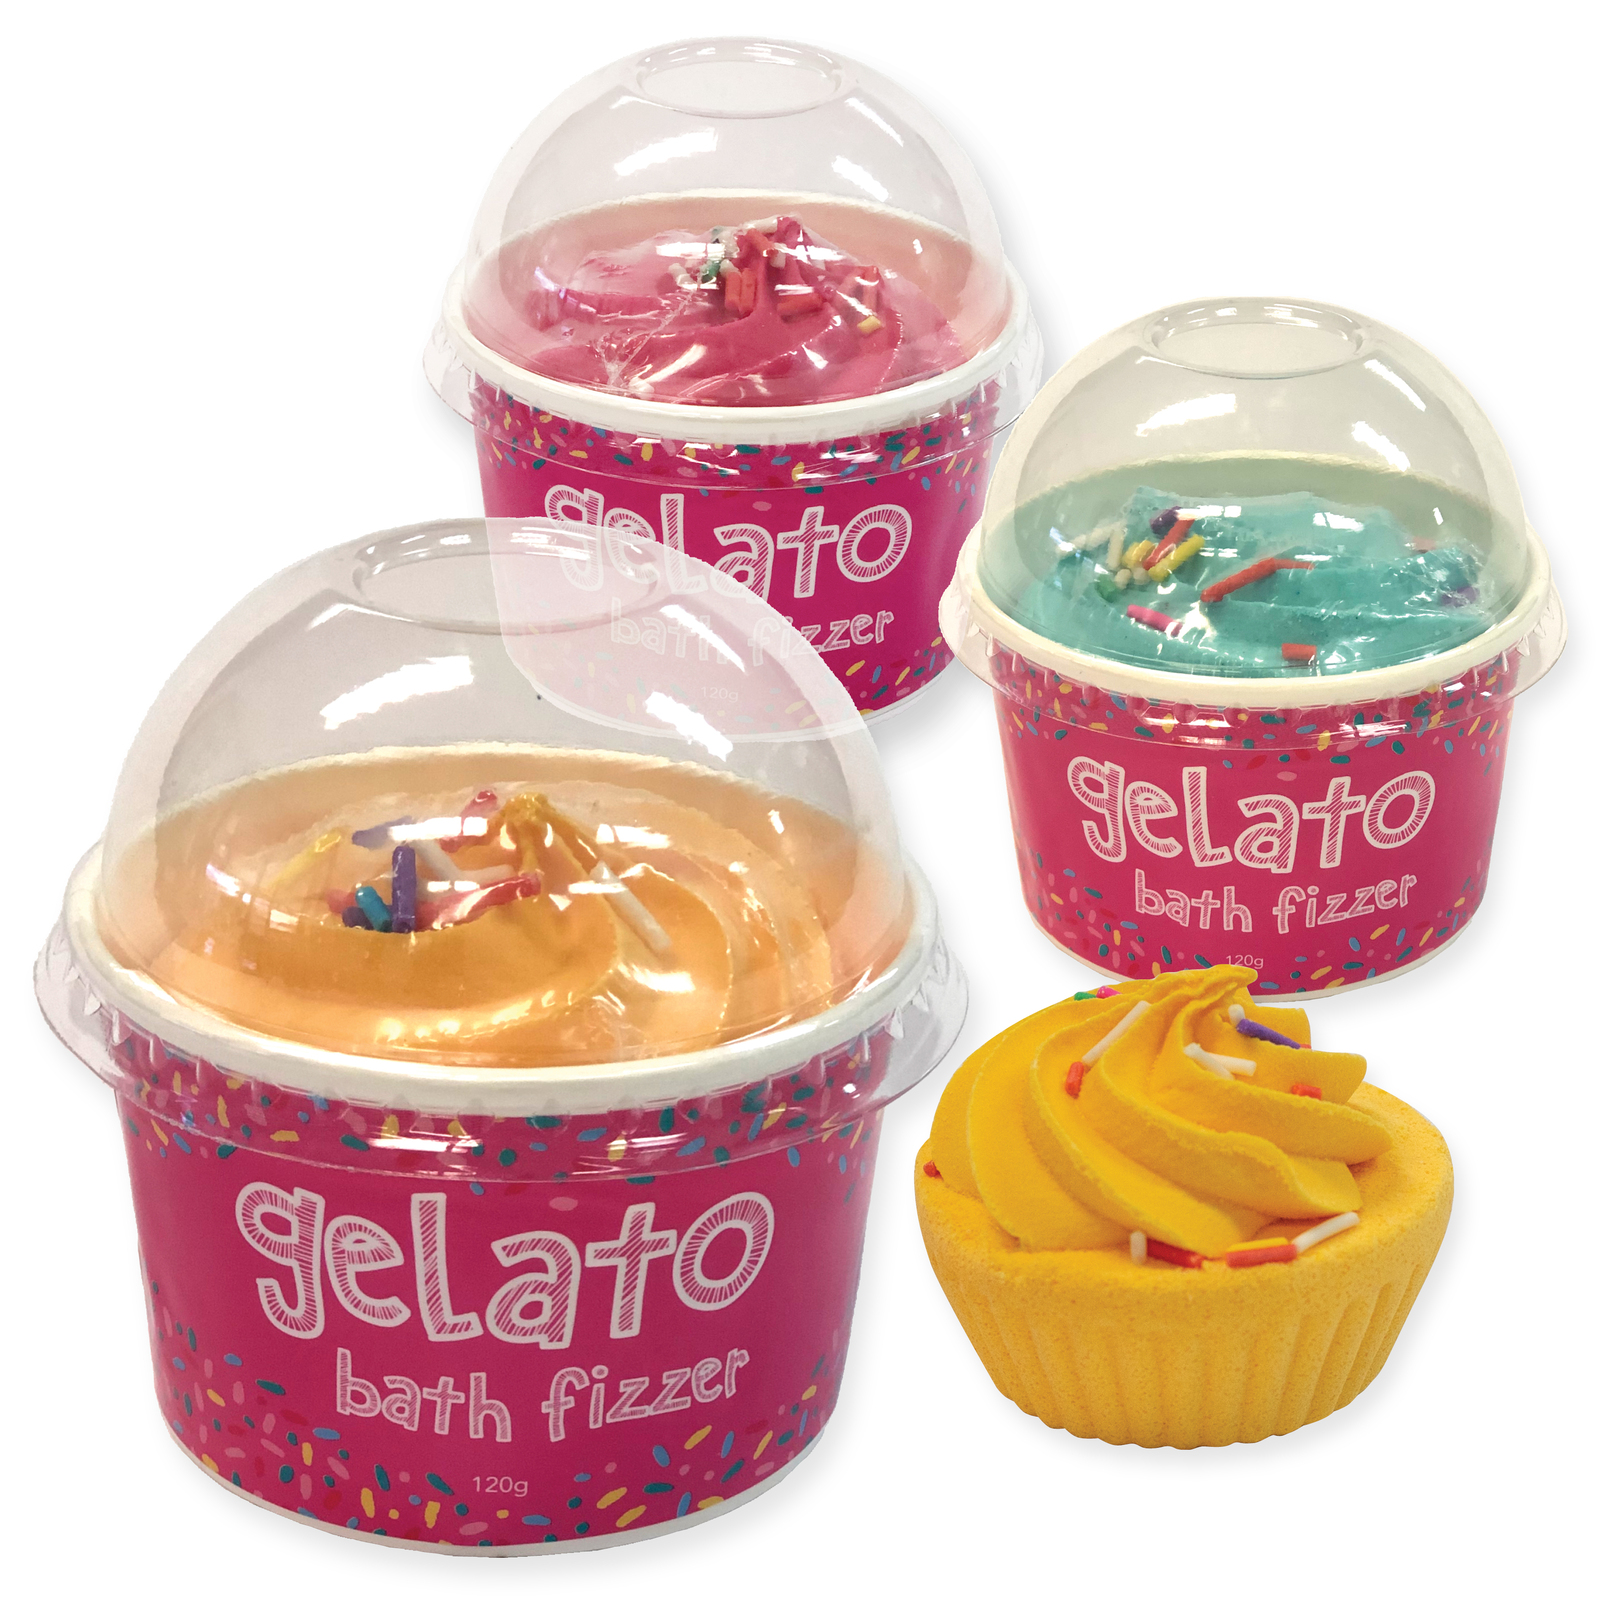 Gelato Bath Fizzer - Pack of 12 ($2.20 ea)